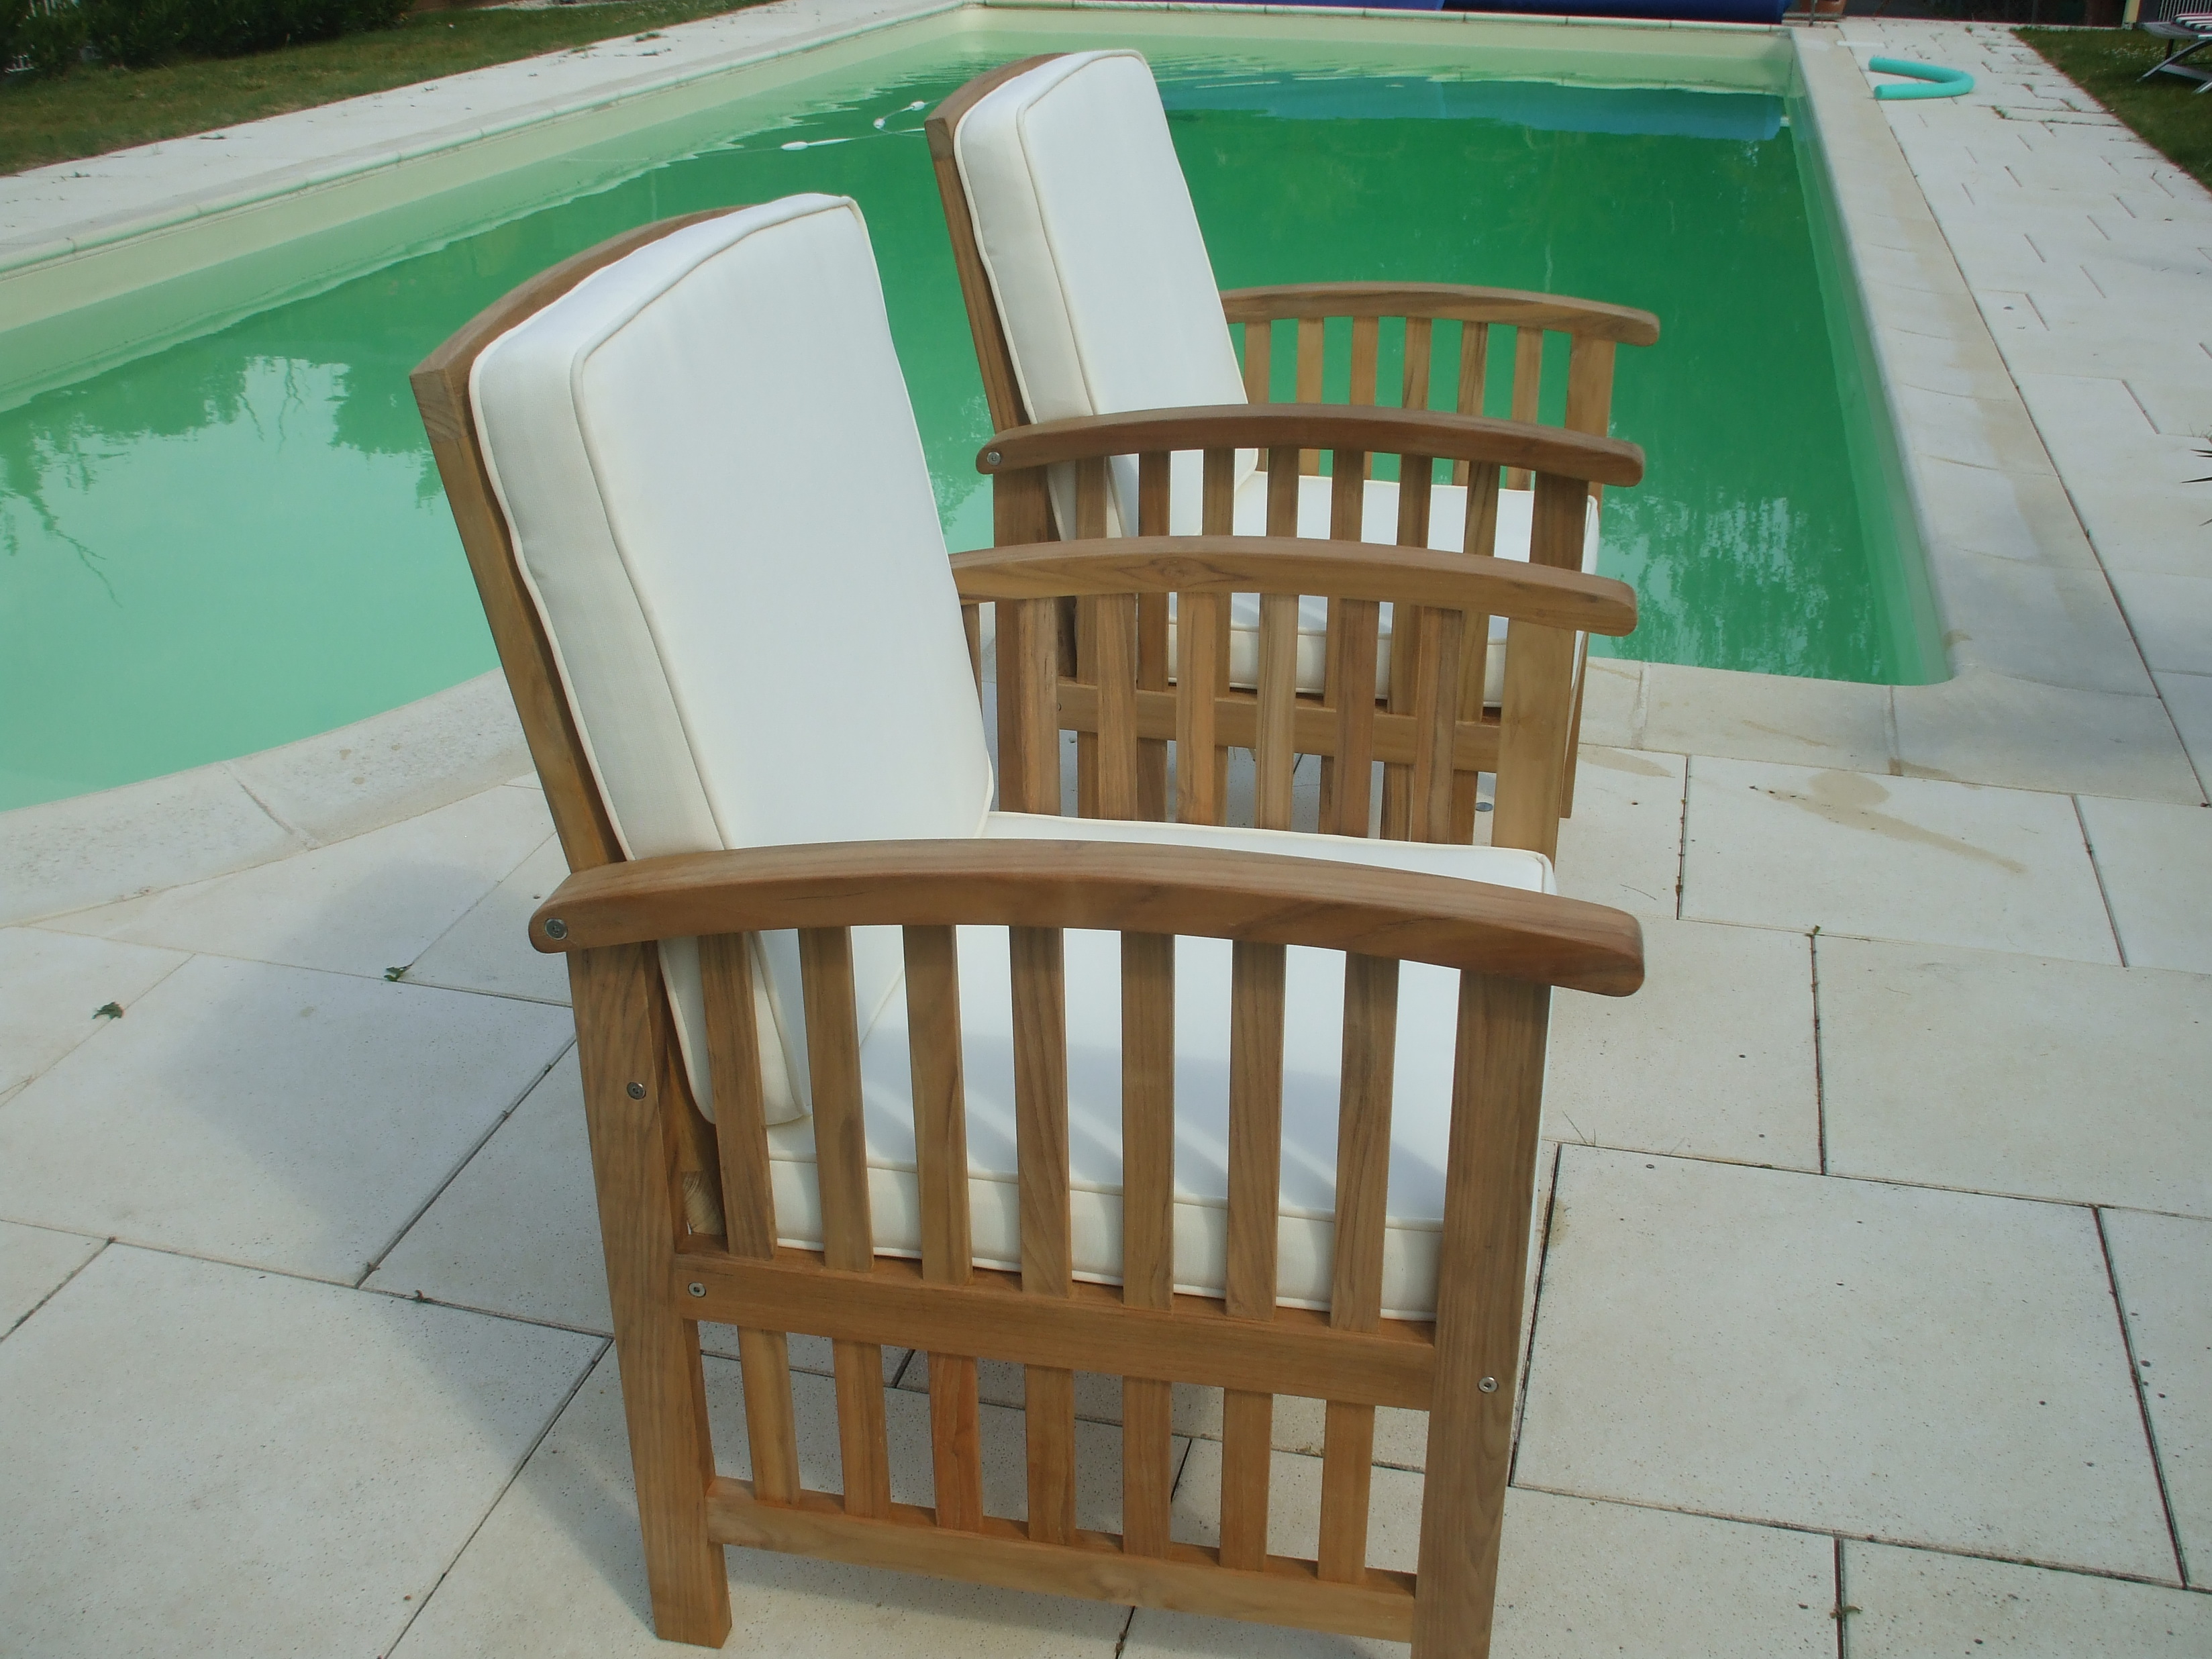 Un fauteuil de jardin en teck chez Lignes et bois.com  Brico Deco